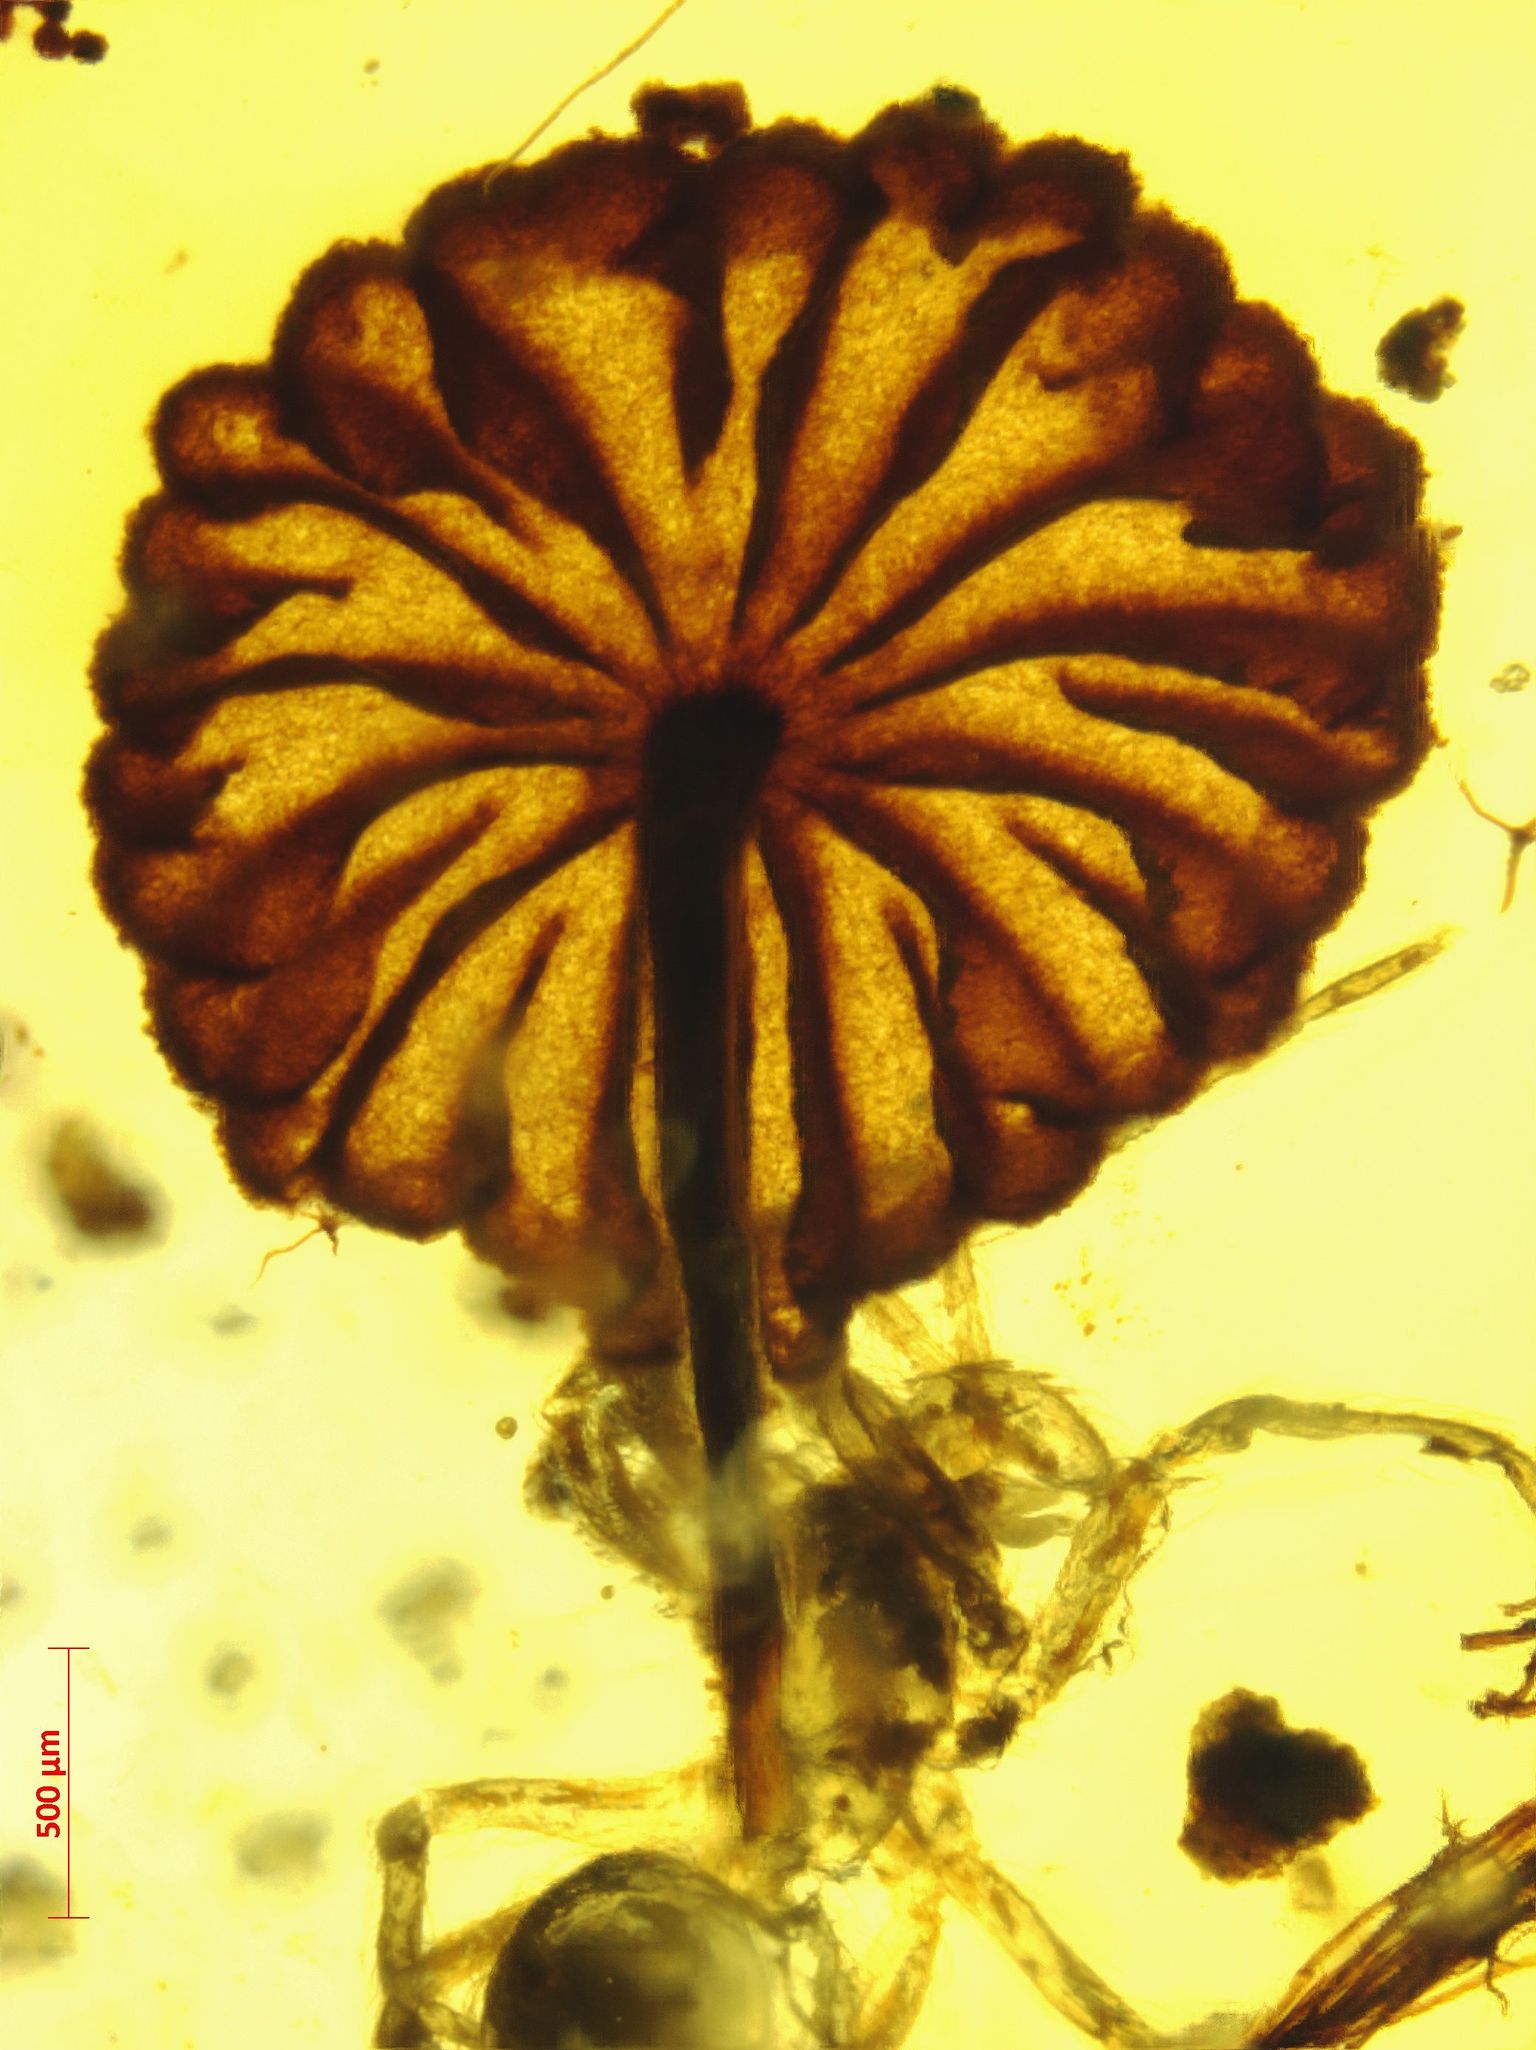 Hiina Teaduste Akadeemia Nanjingi Geoloogia ja Paleontoloogia Instituudi avaldatud pilt haruldaselt hästi säilinud fossiliseerunud seenest.